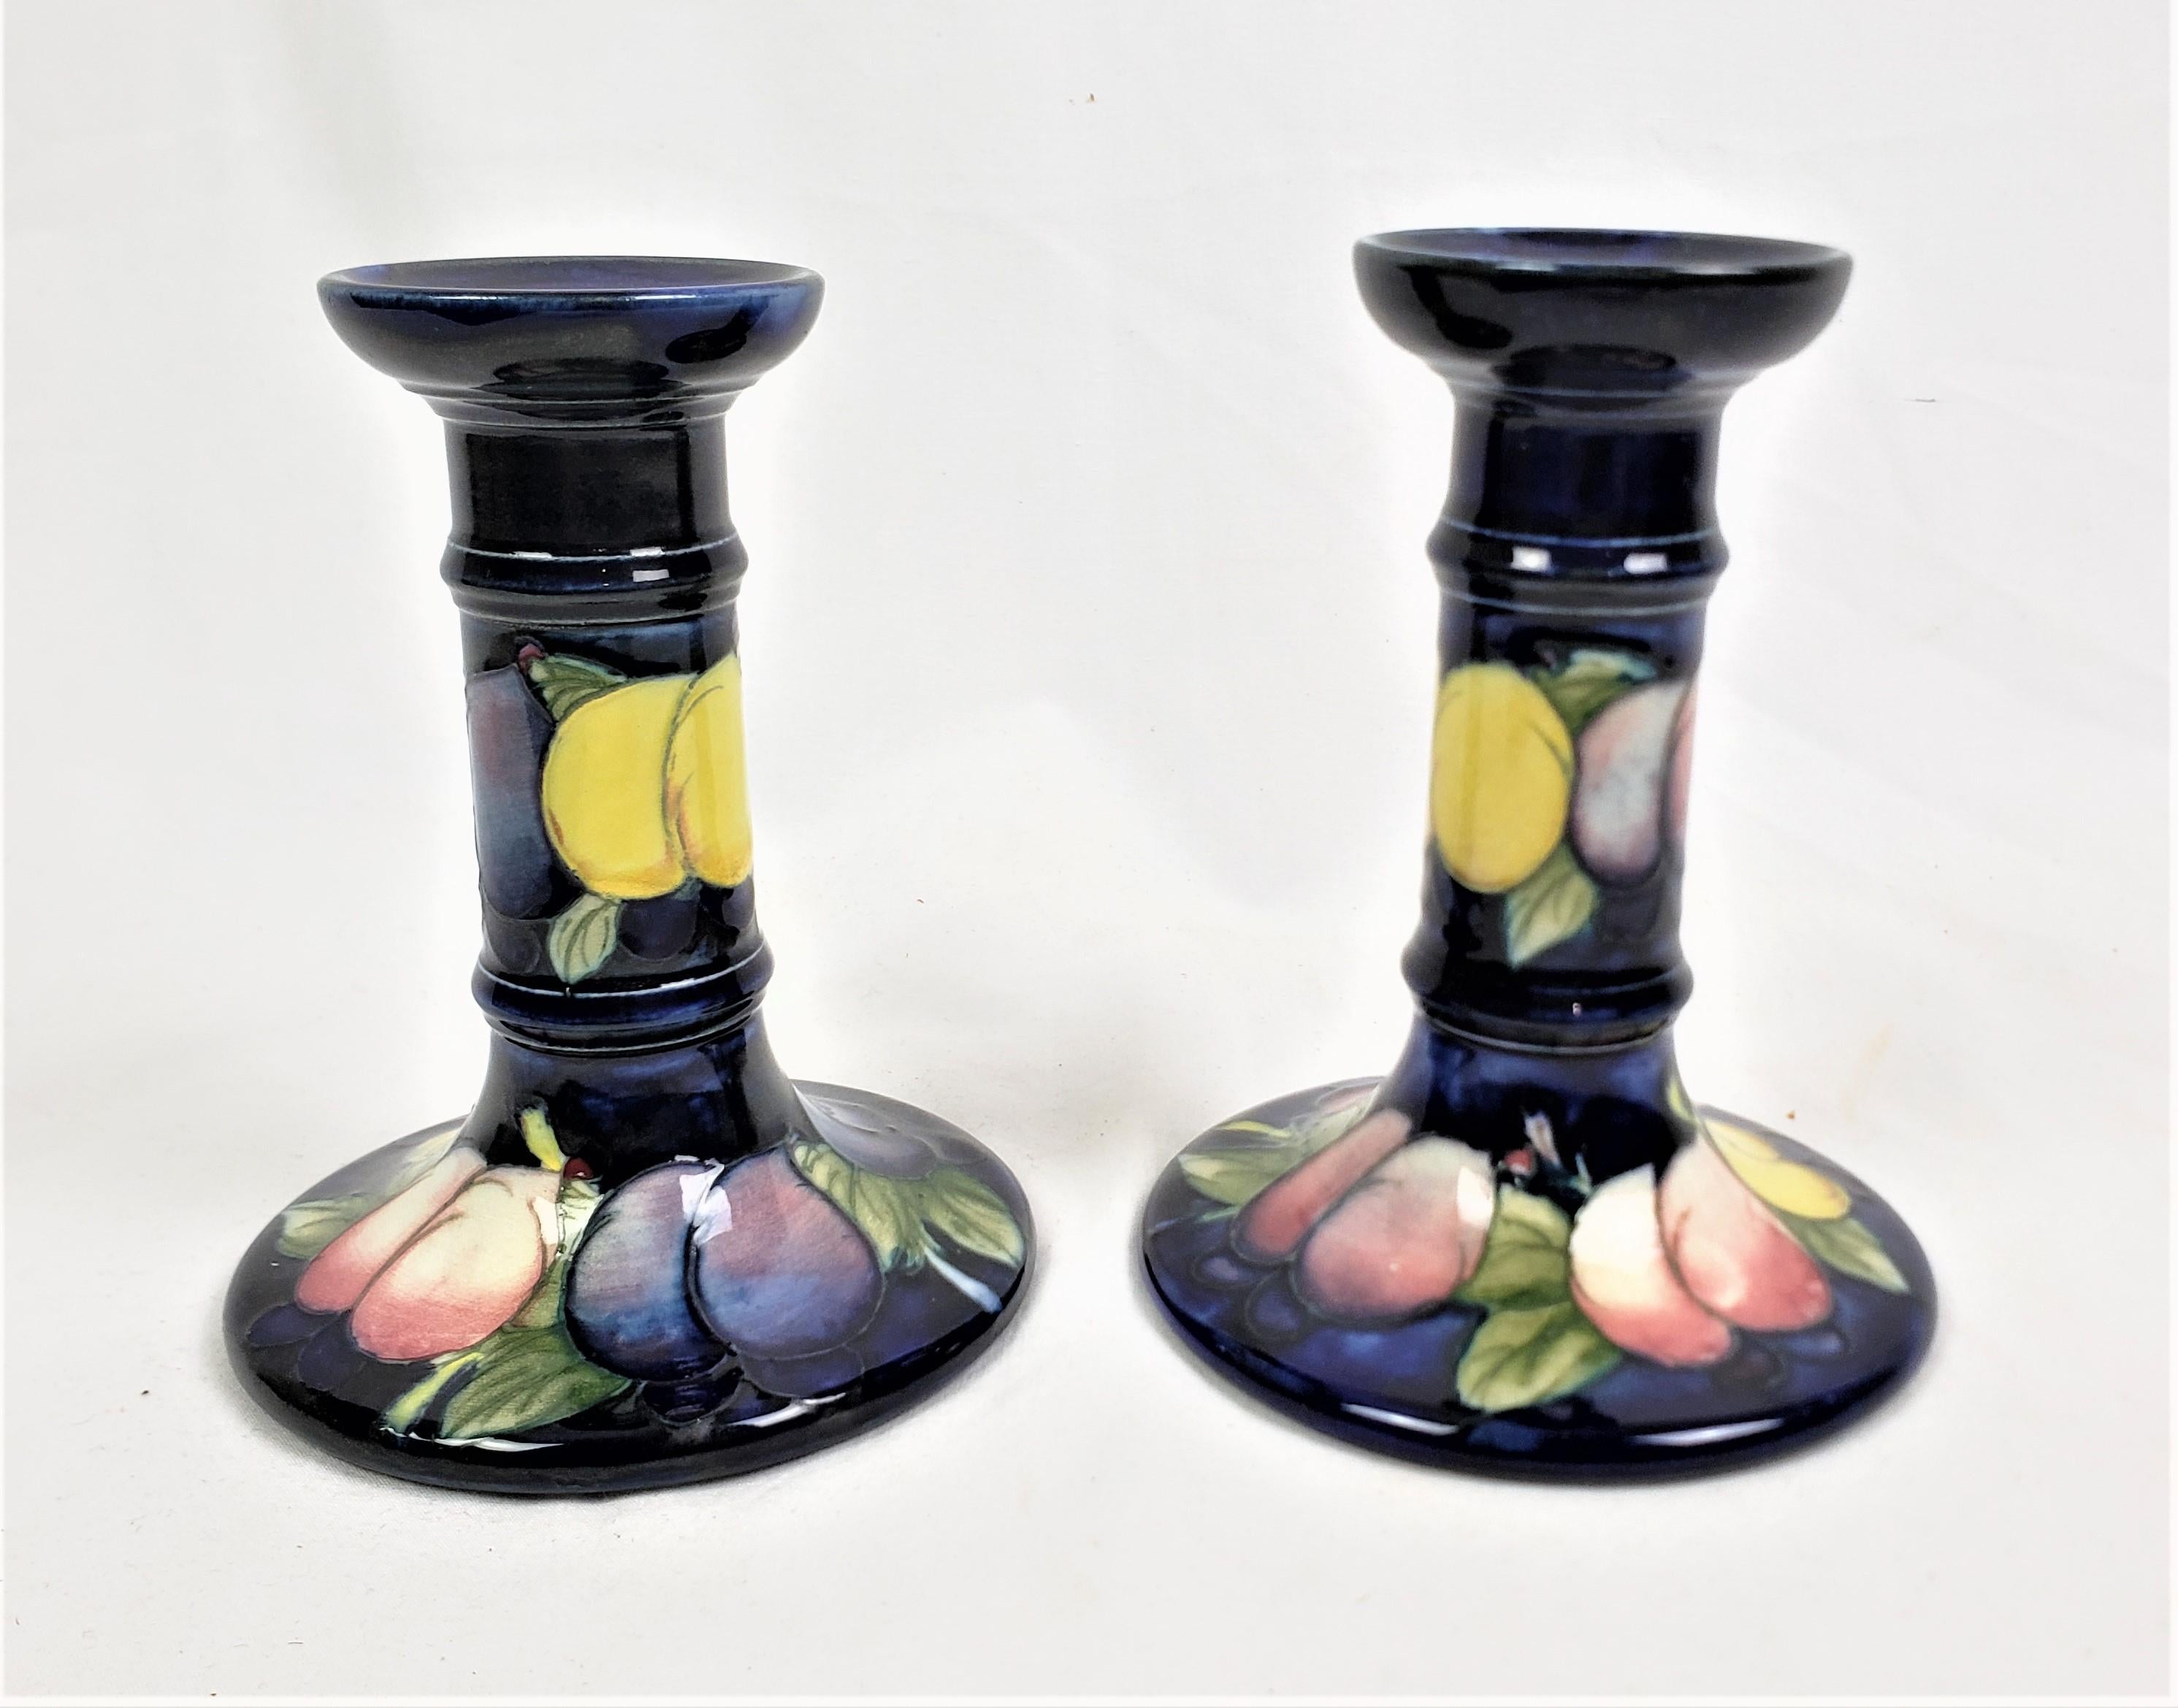 Cette paire de chandeliers en poterie d'art a été fabriquée par la célèbre usine anglaise Moorcroft Pottery. Elle date d'environ 1920 et a été réalisée dans le style caractéristique de l'entreprise. Les chandeliers sont réalisés avec le fond bleu